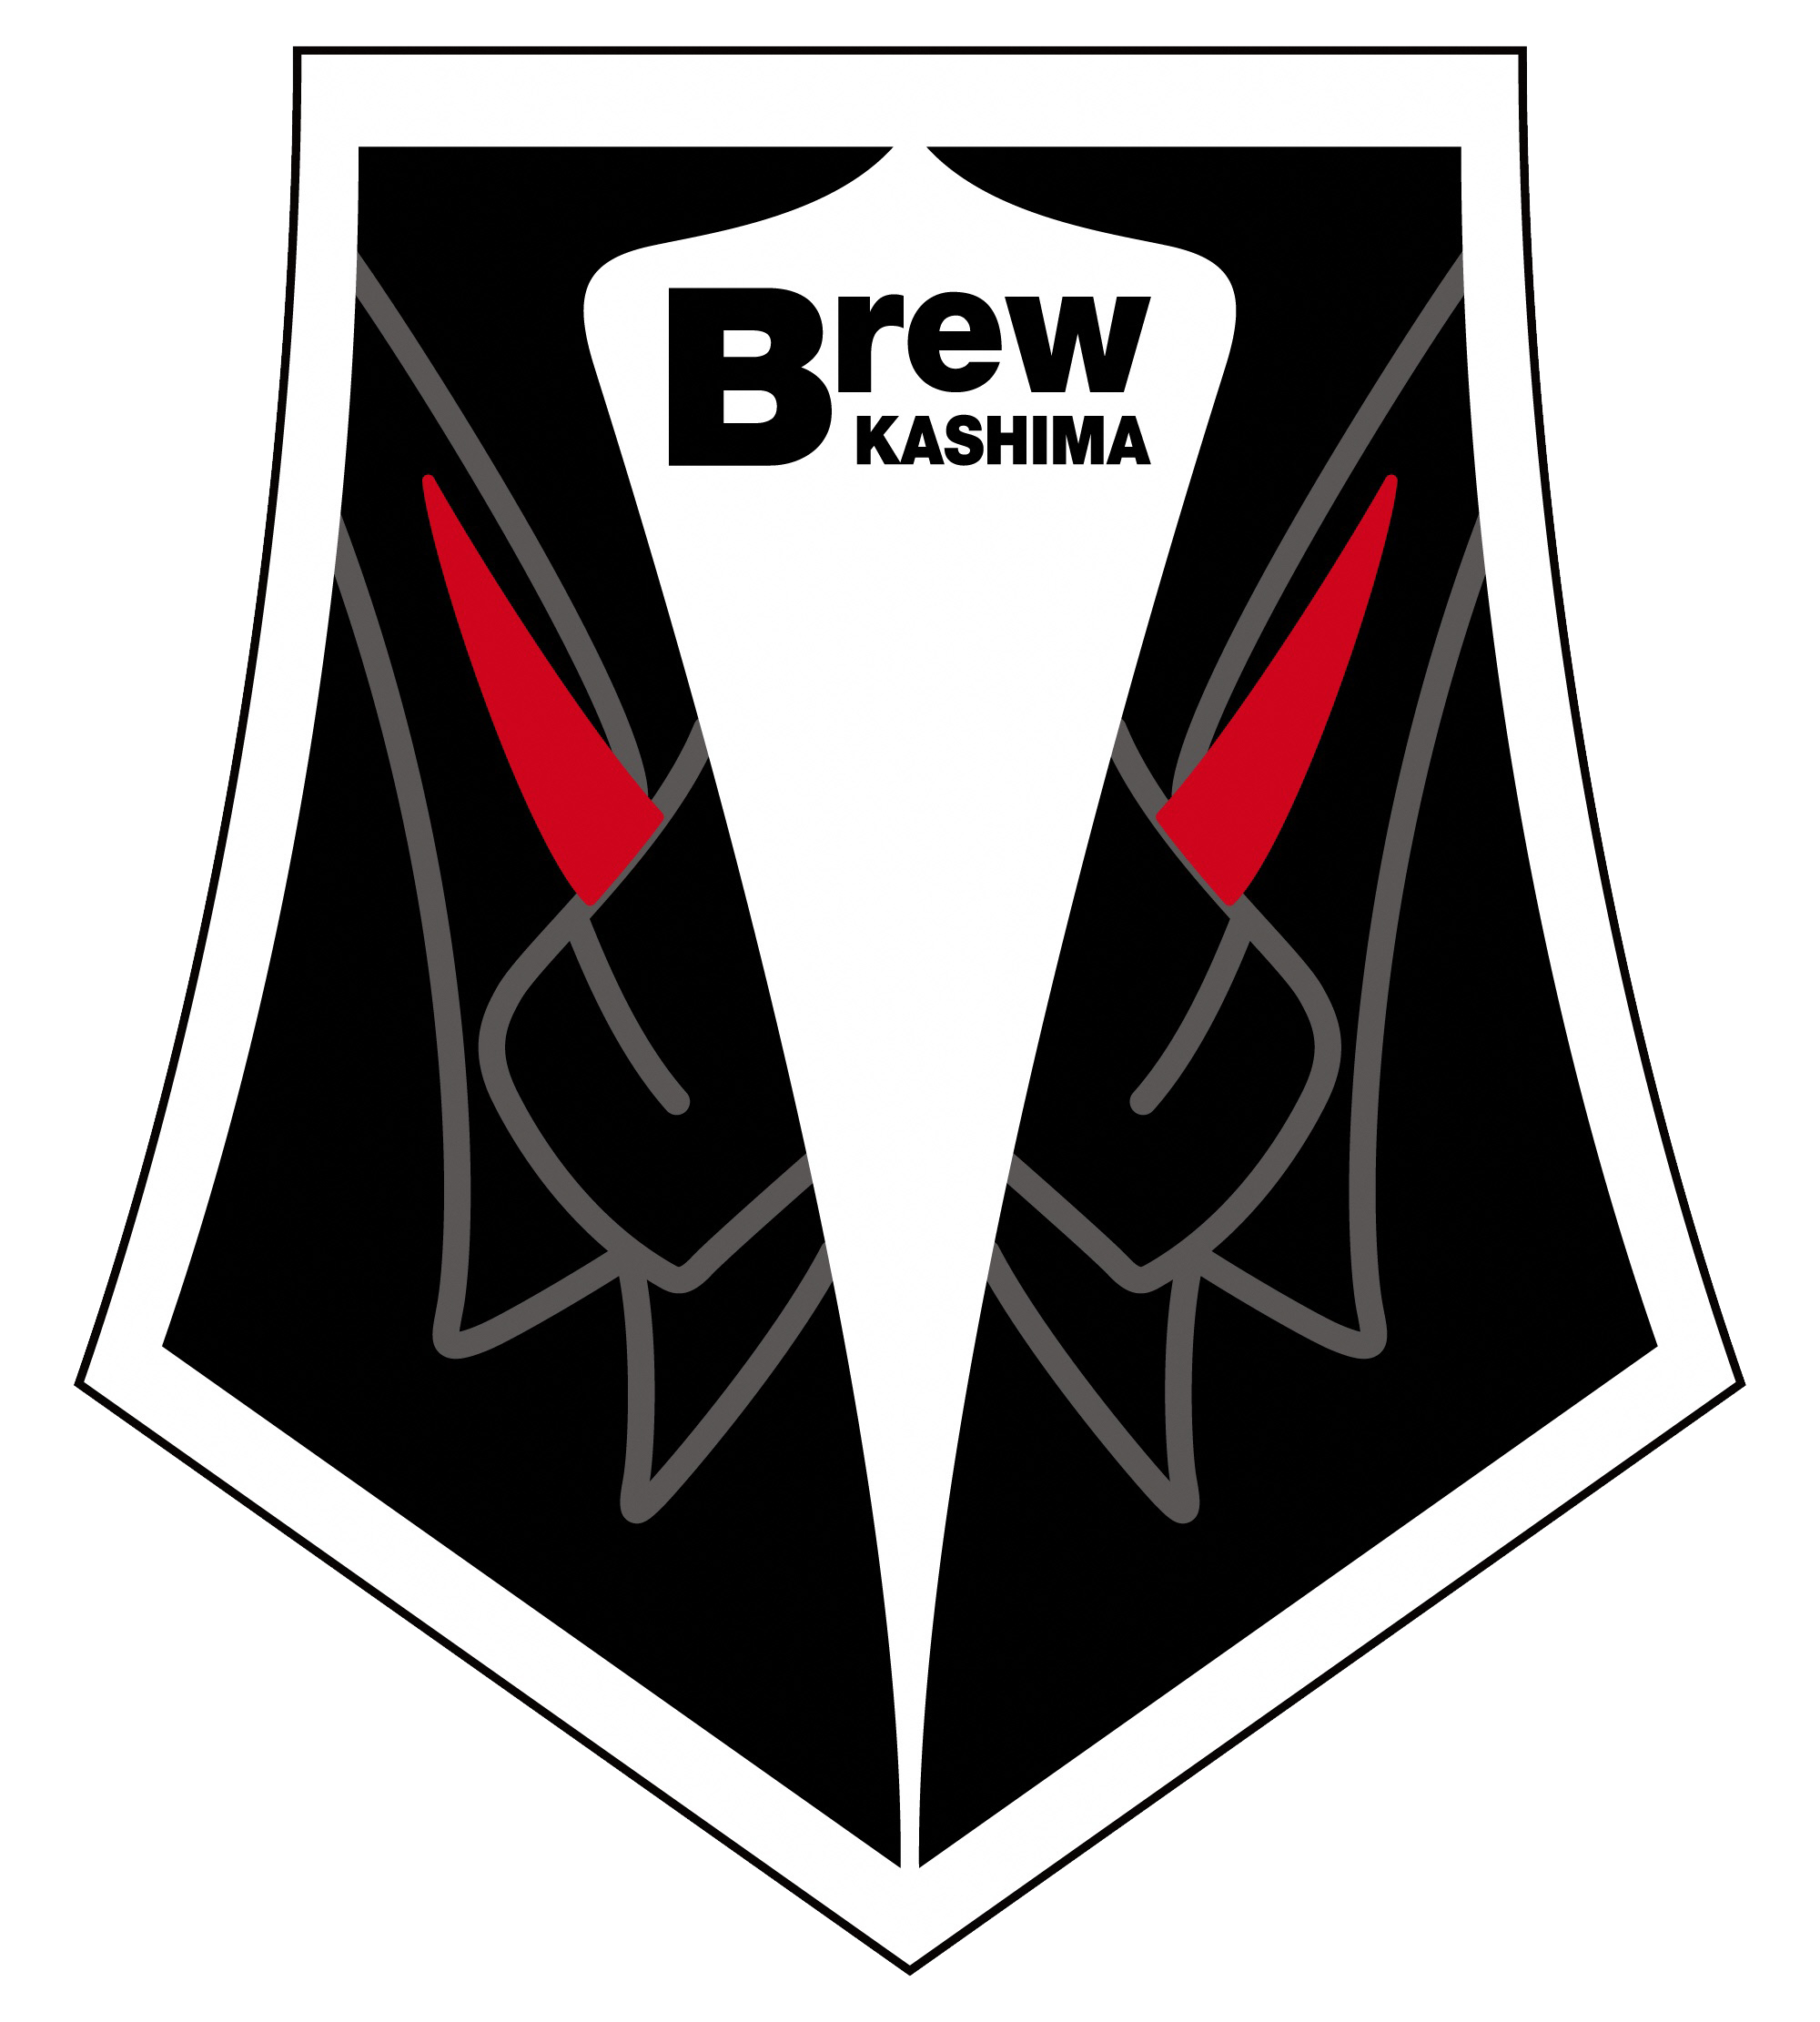 Brew KASHIMA